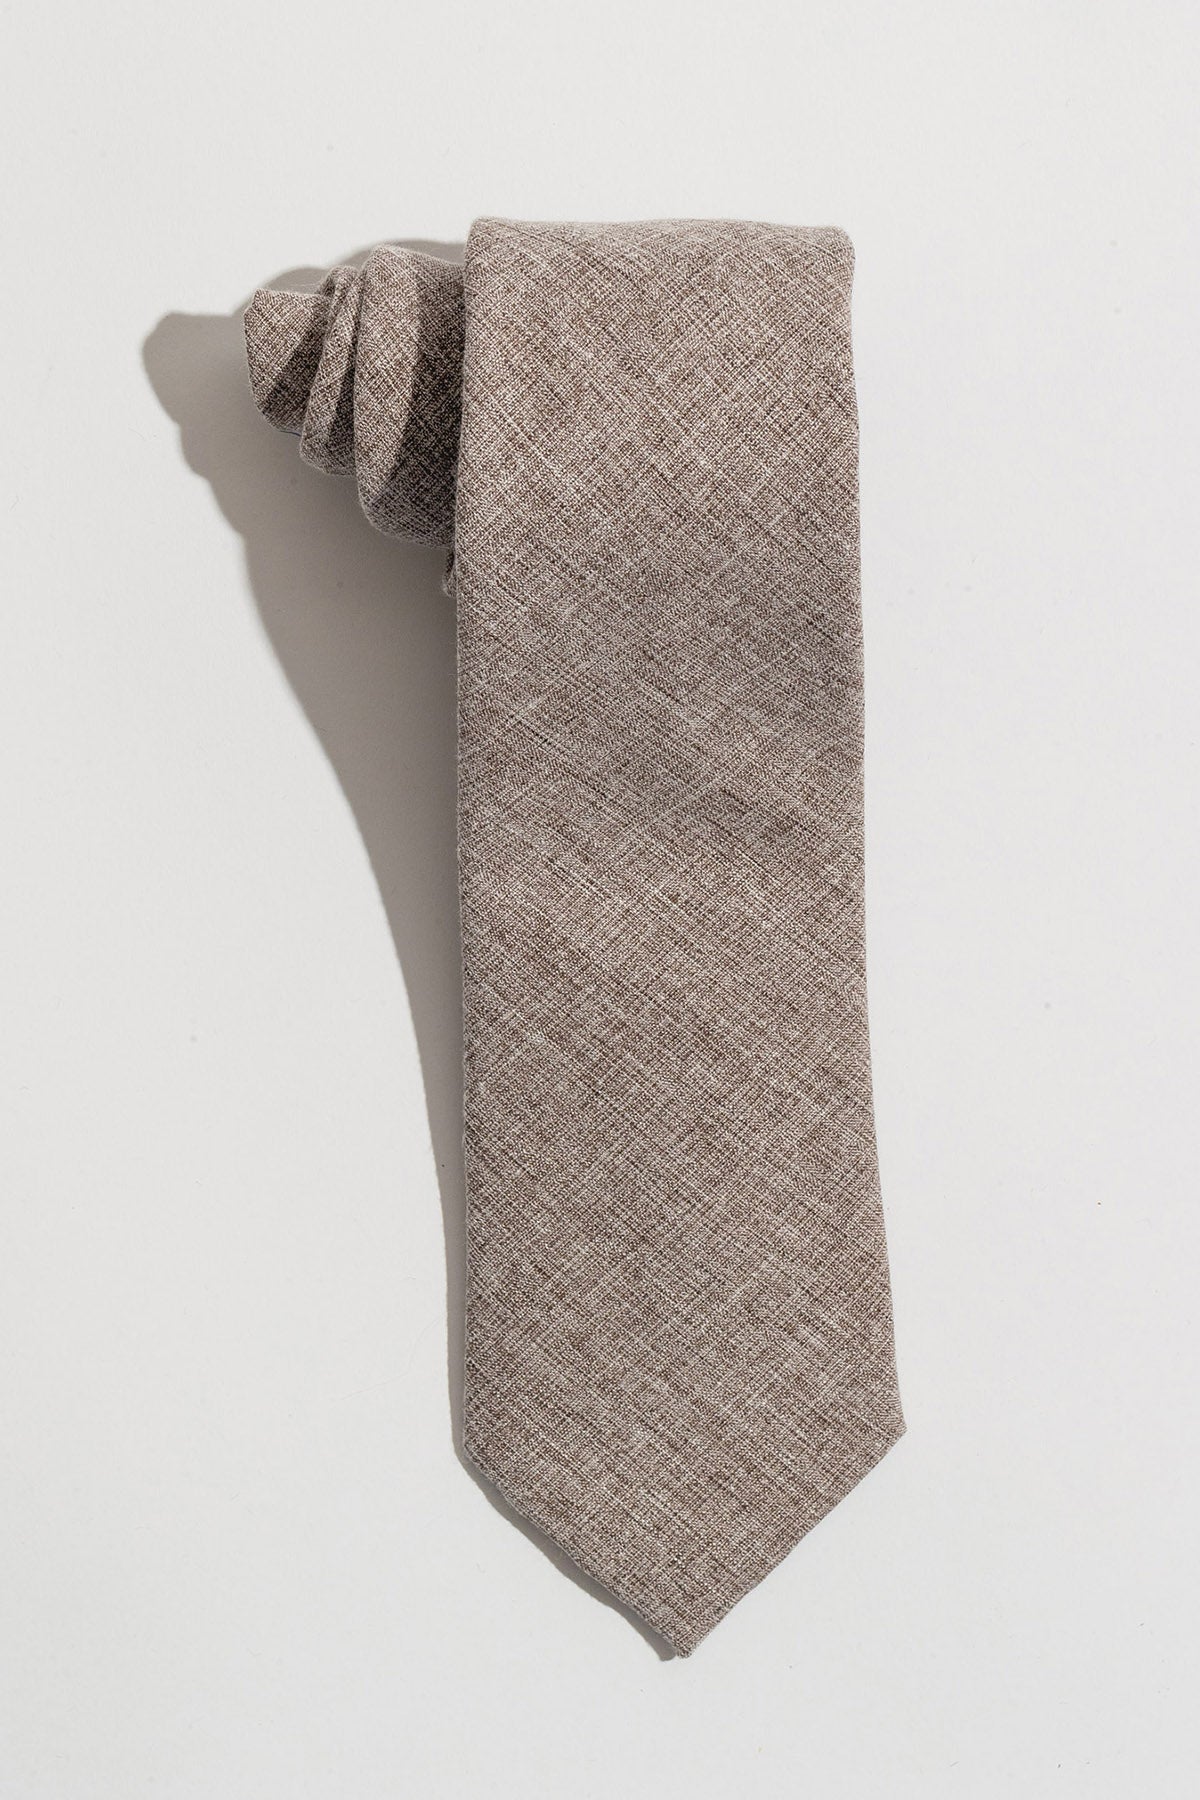 AN IVY Slips Beige Textured Tie